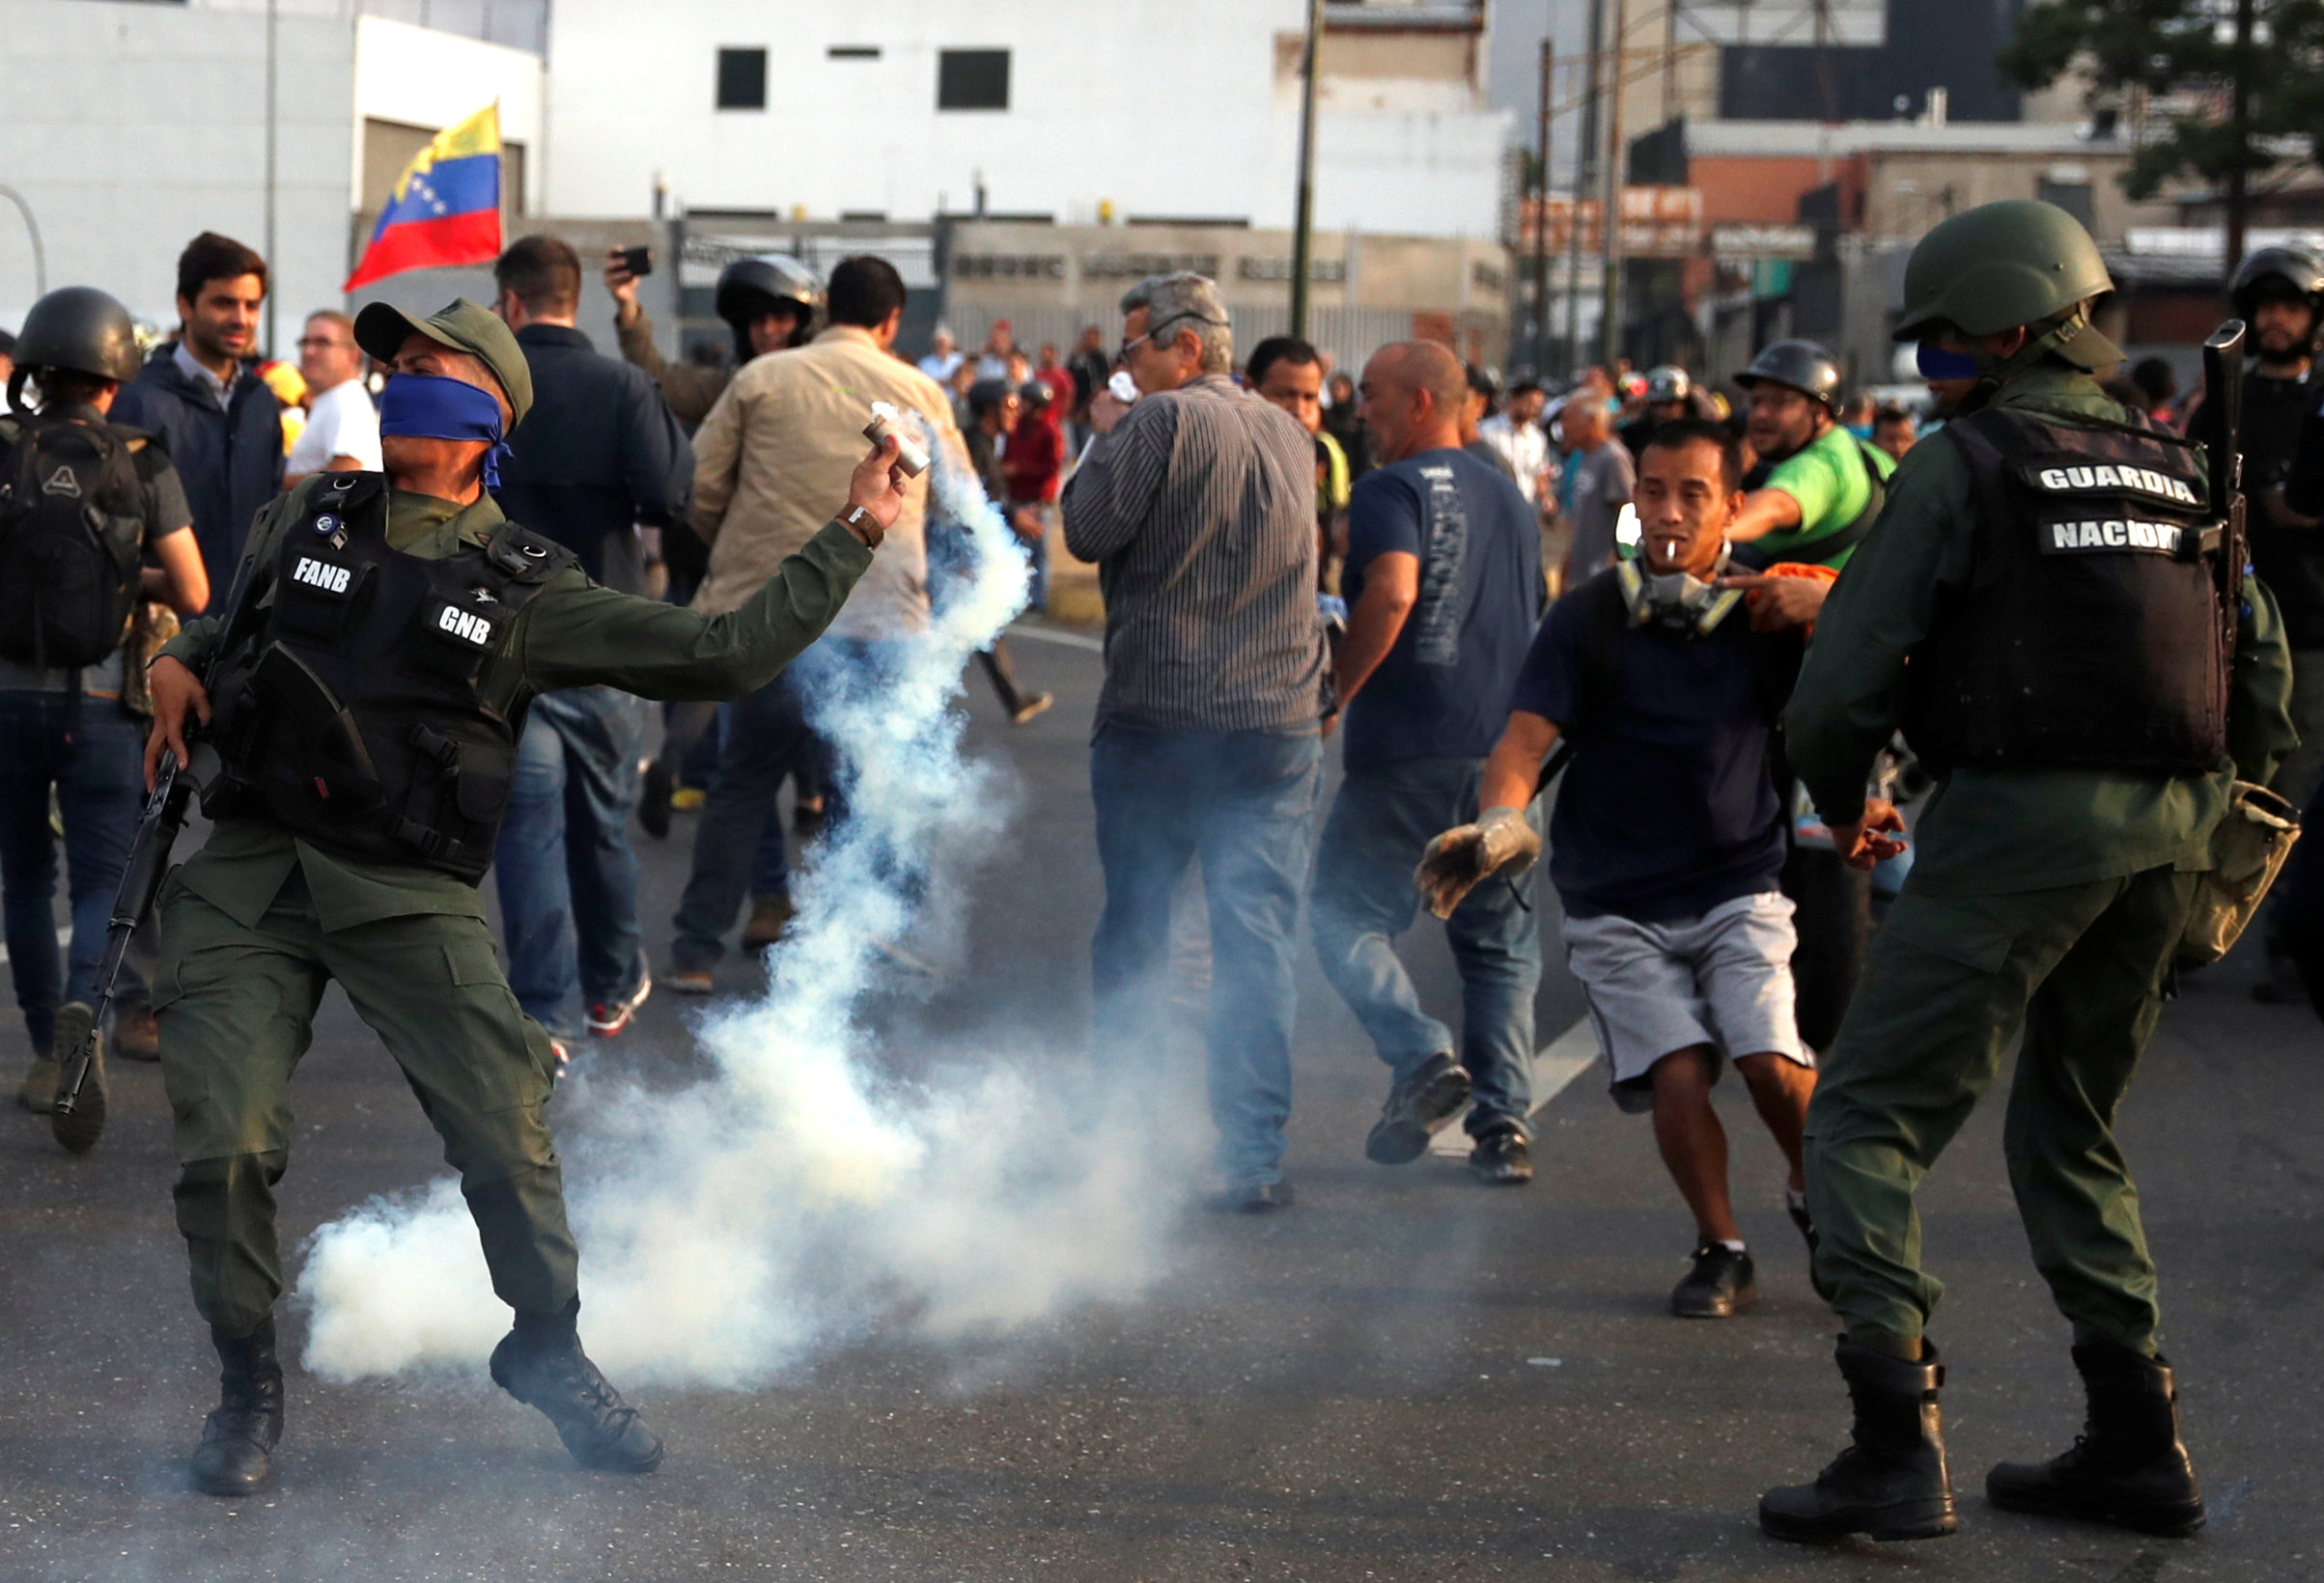 Un militar arroja de vuelta un cartucho de gas lacrimógeno disparado hacia la concentración de opositores políticos (Reuters)